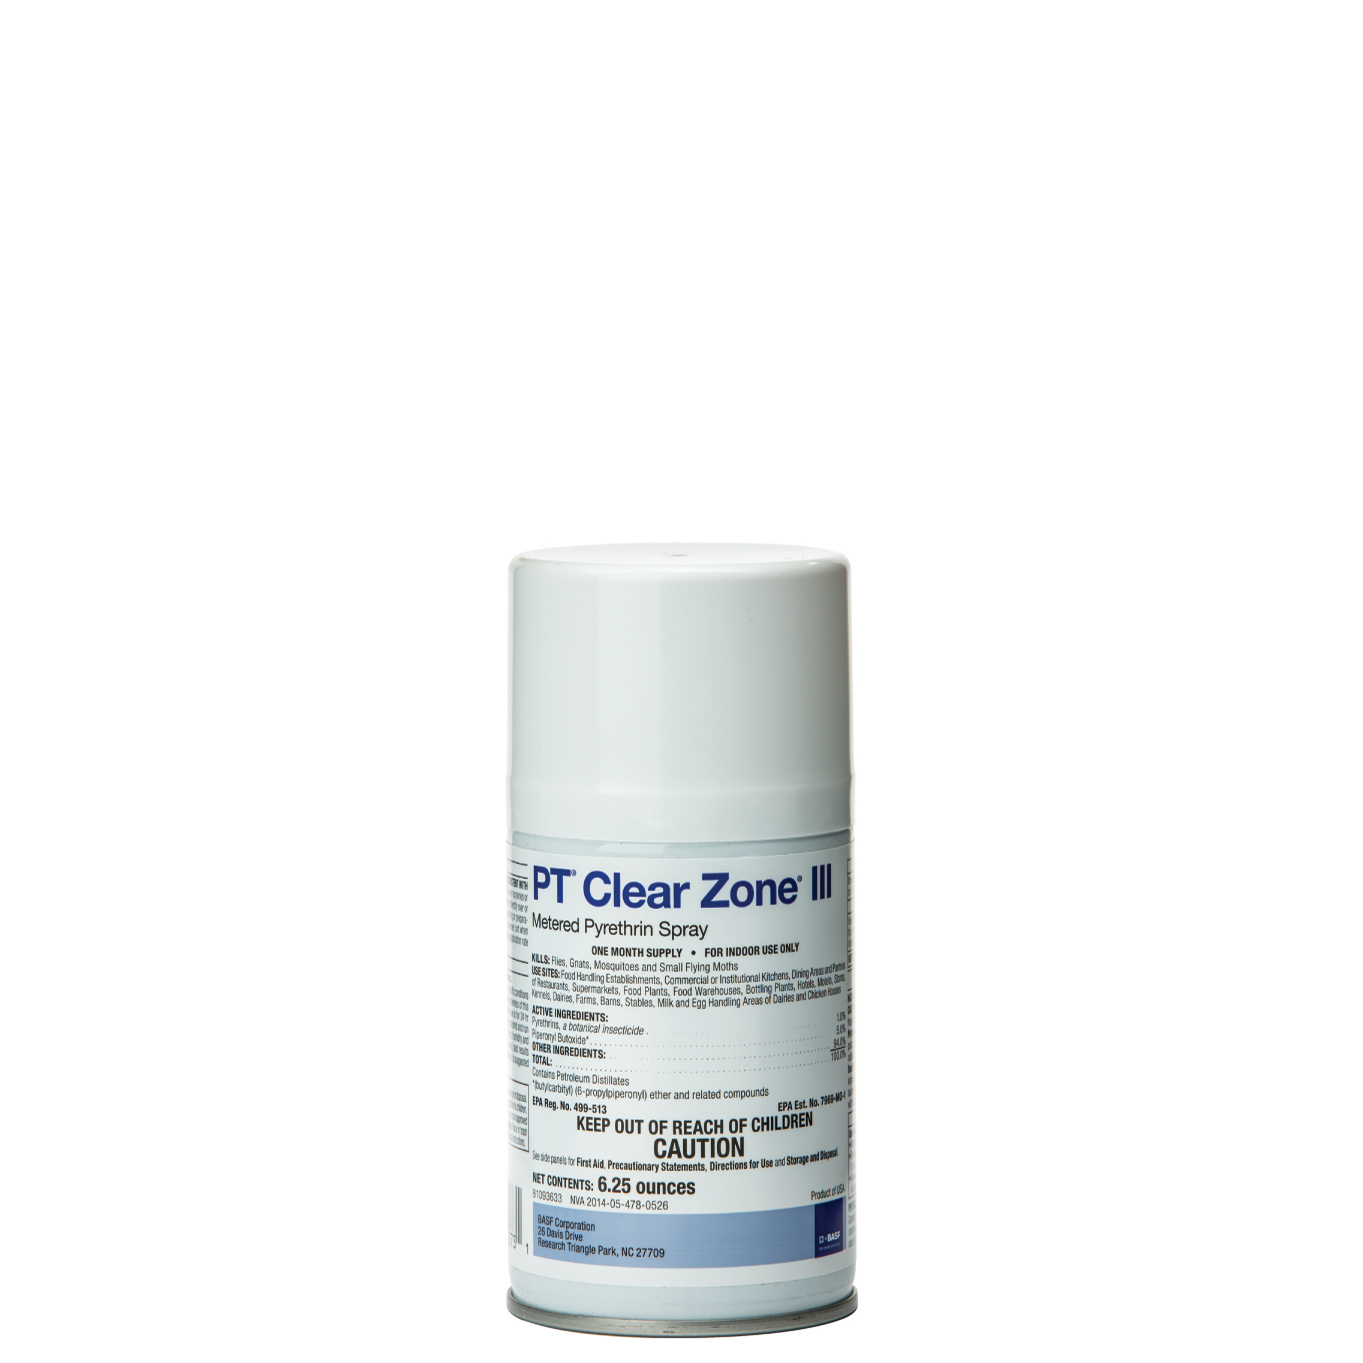 PT Clear zone III bottle